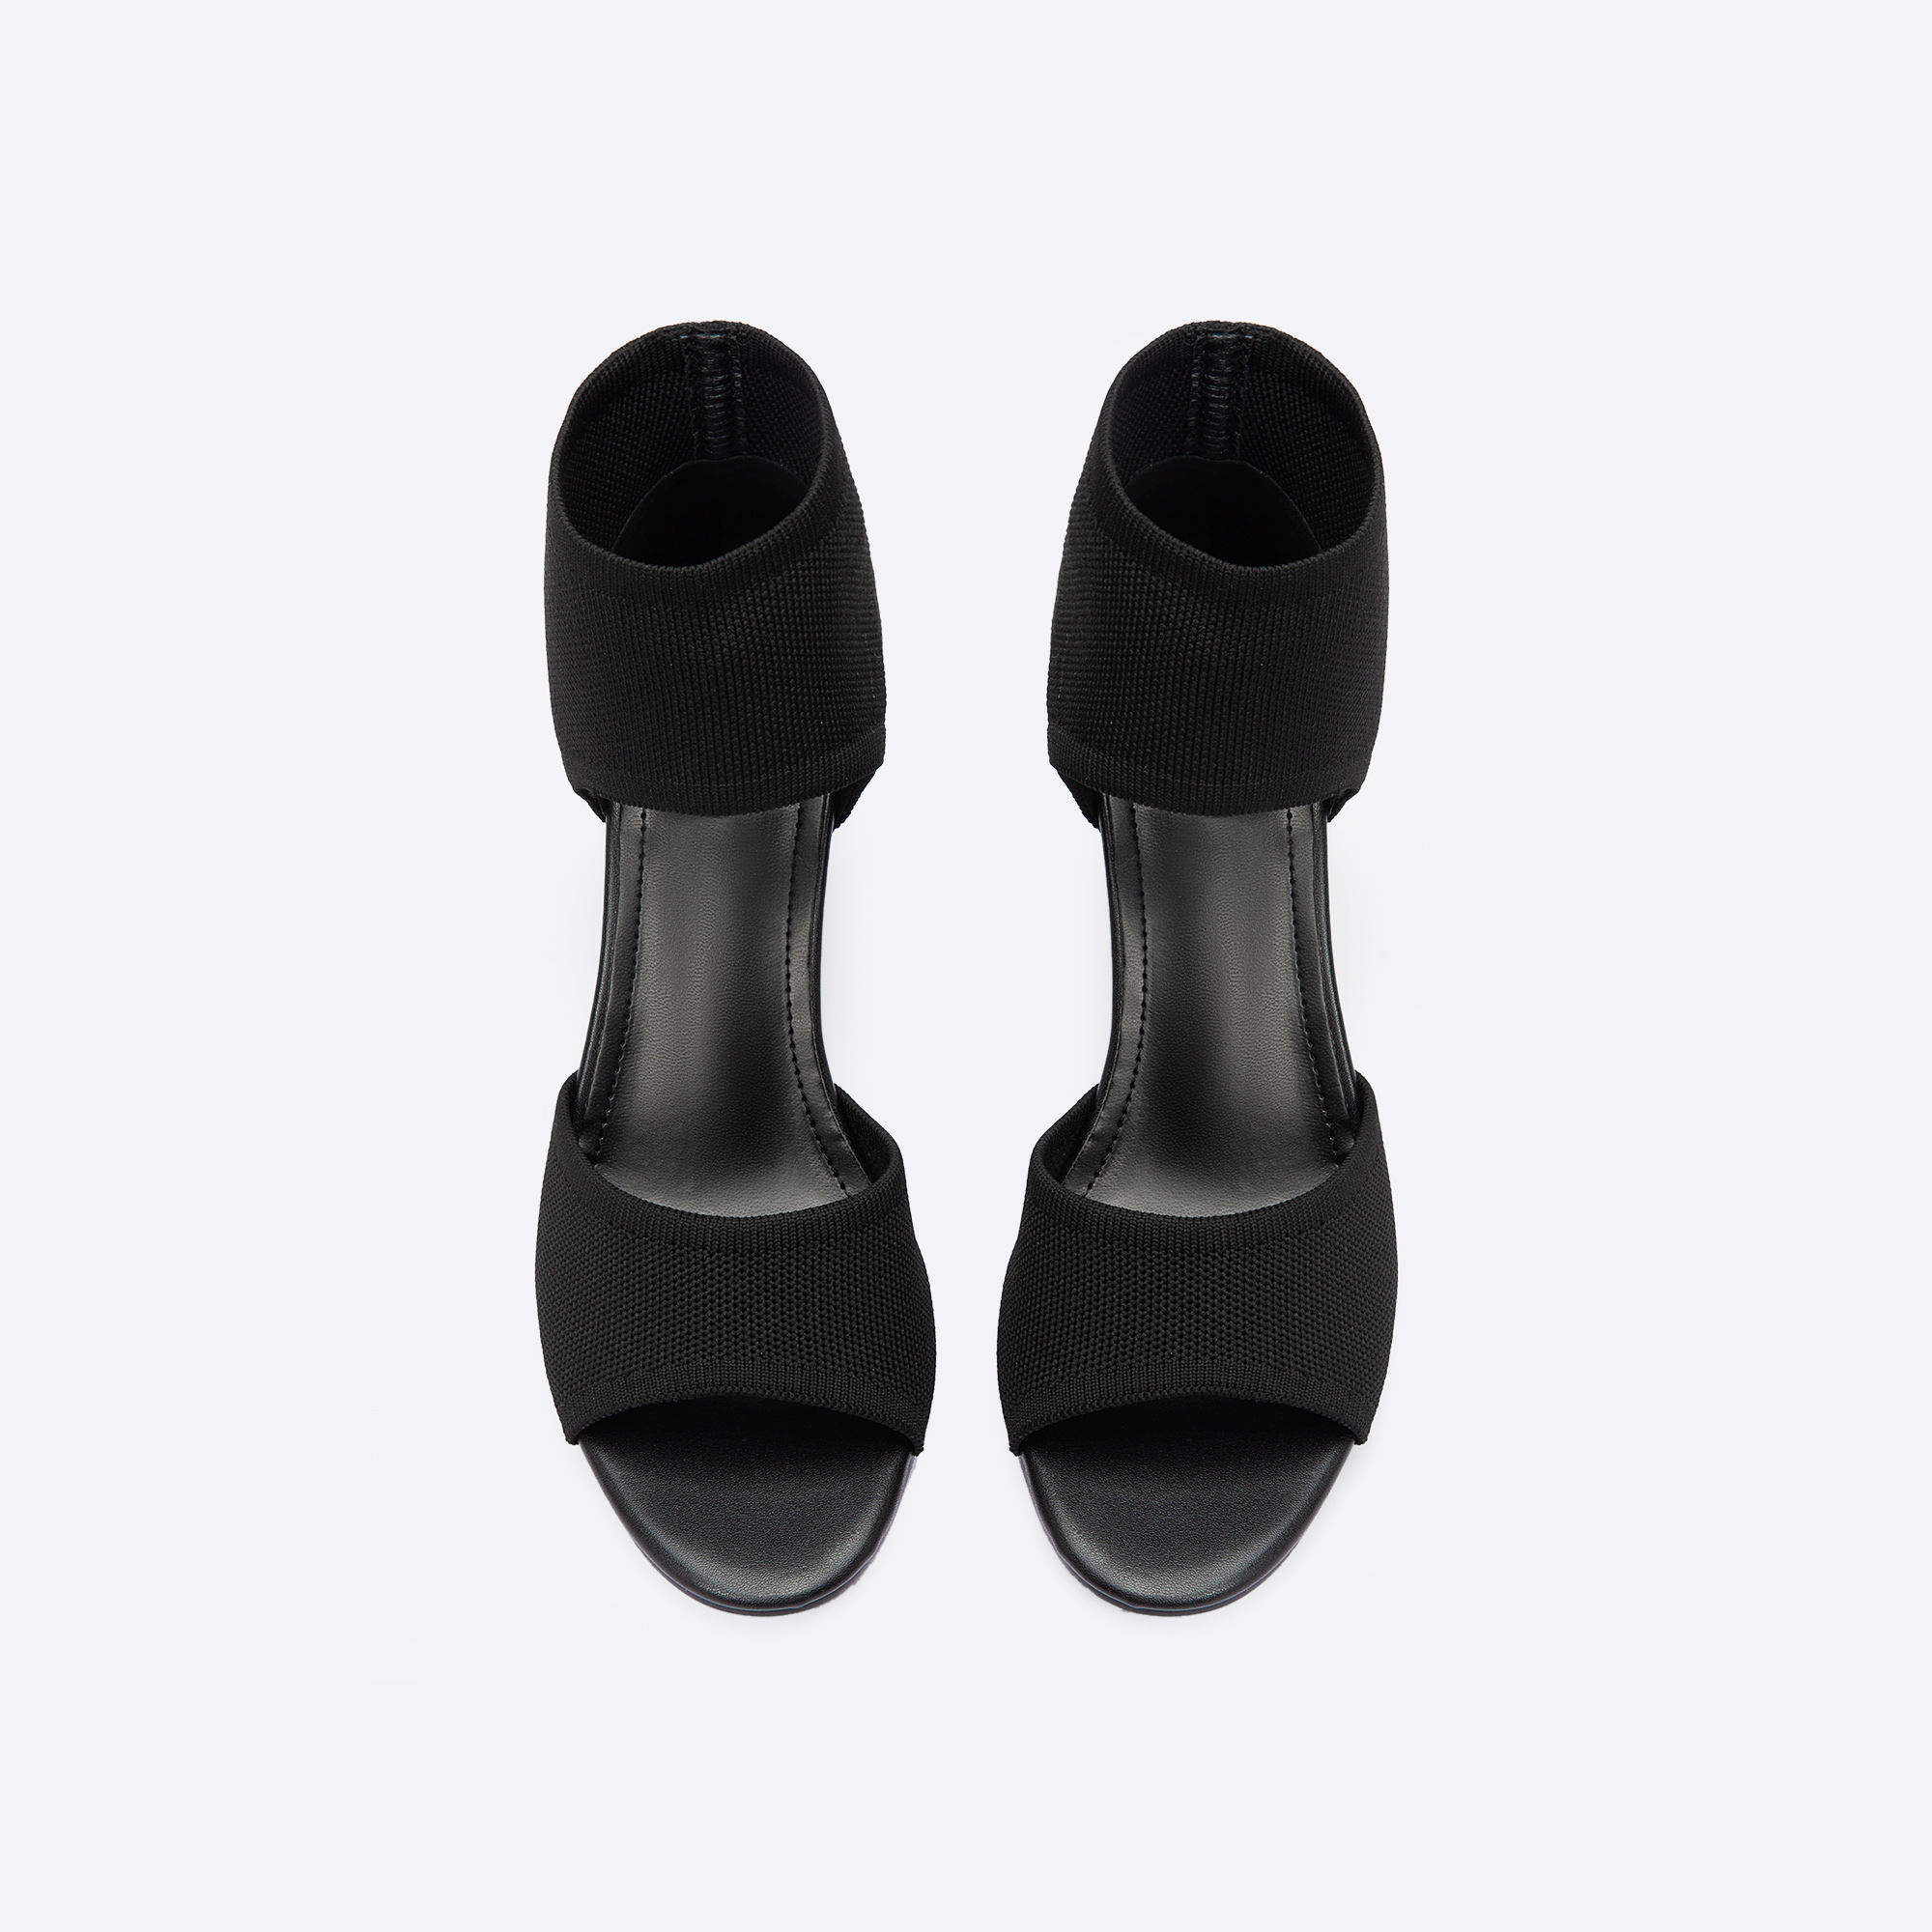 MOUSSE FIT Elegant Stiletto Daily Sandals Boots